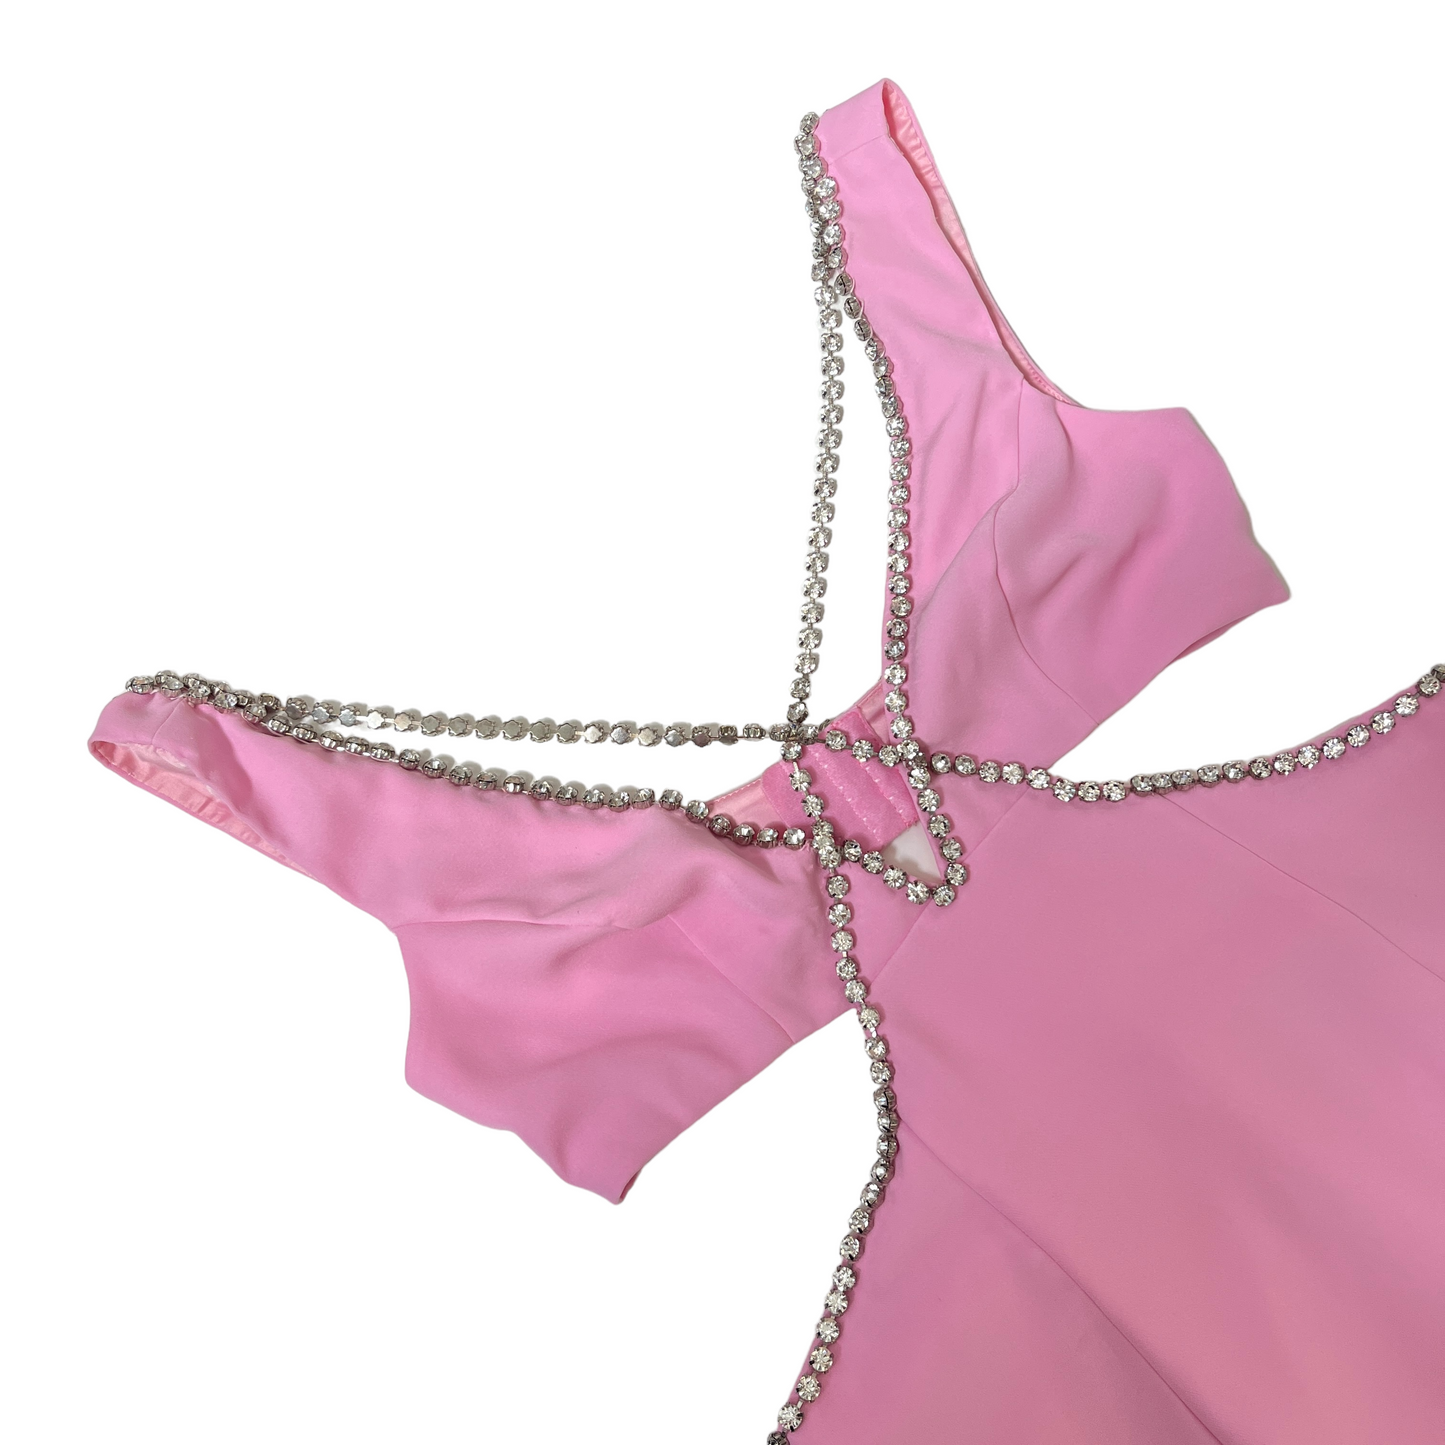 MAJORELLE Matteson Gown in Bubblegum Pink